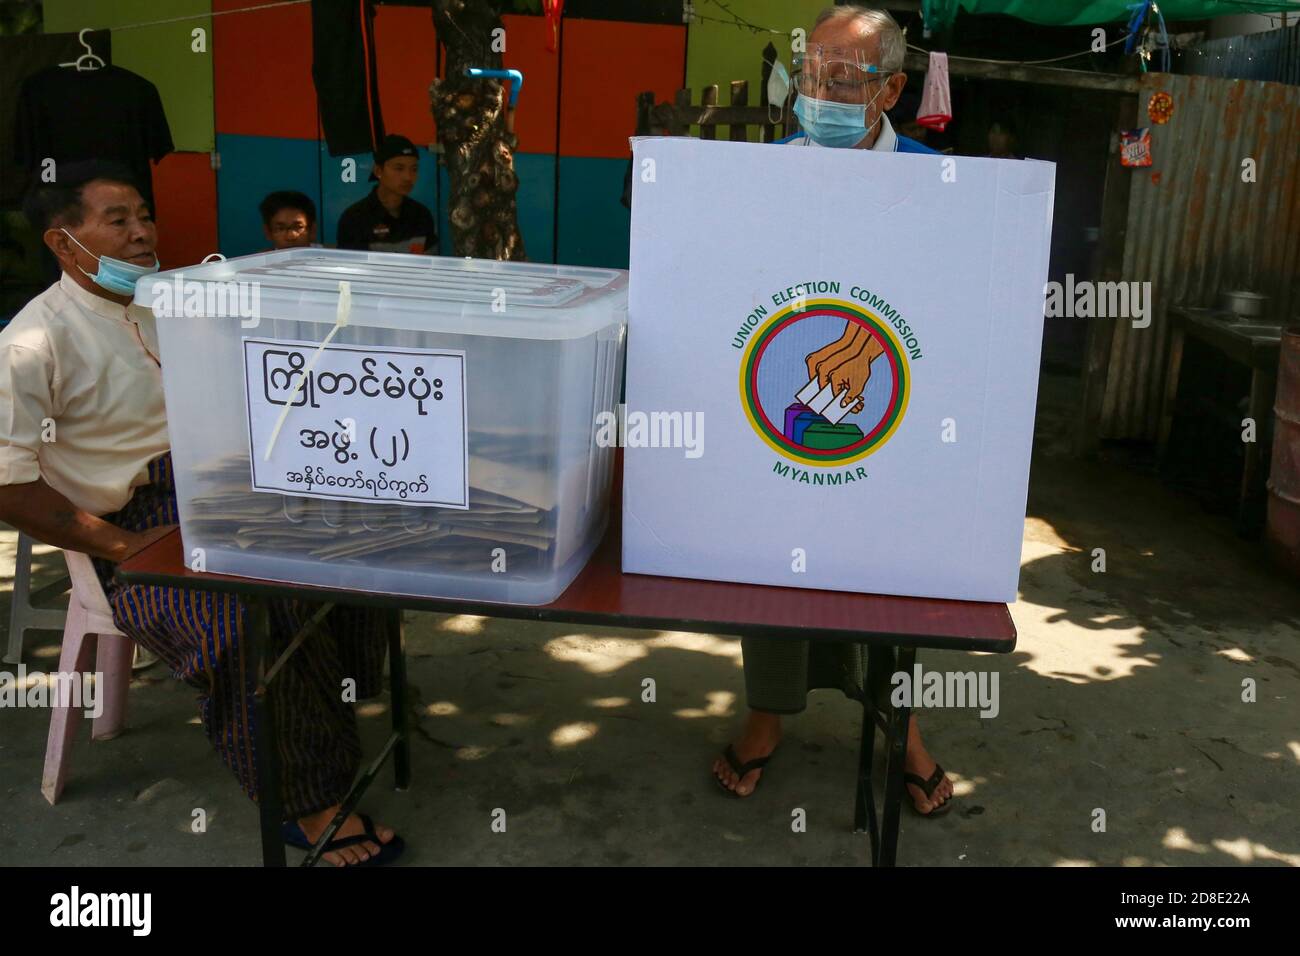 Un homme âgé portant un masque facial et un écran facial lance son bulletin de vote à un poste de vote.la commission électorale de l'Union vote à l'avance pour les personnes âgées de plus de (60) ans. Les électeurs de plus de (60) ans du canton de Mandalay, Aung Myay Thar Zan, pourront voter à l'avance le matin du 29 octobre. Les élections générales du Myanmar auront lieu le 8 novembre. Banque D'Images